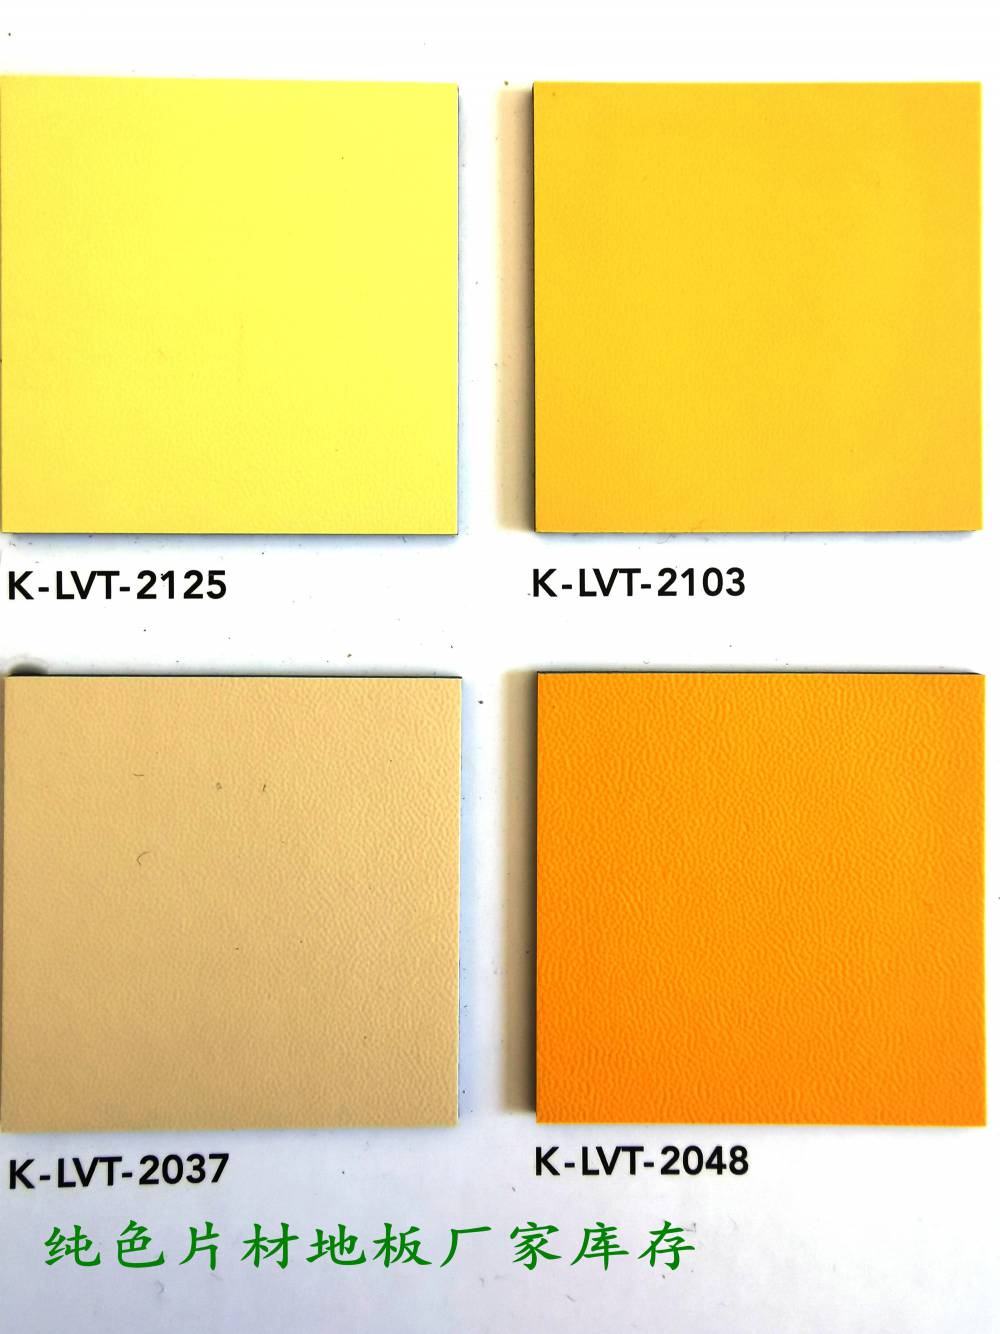 米黄色-LVT地板|LVT片材地板-防水防潮地板【卡曼】